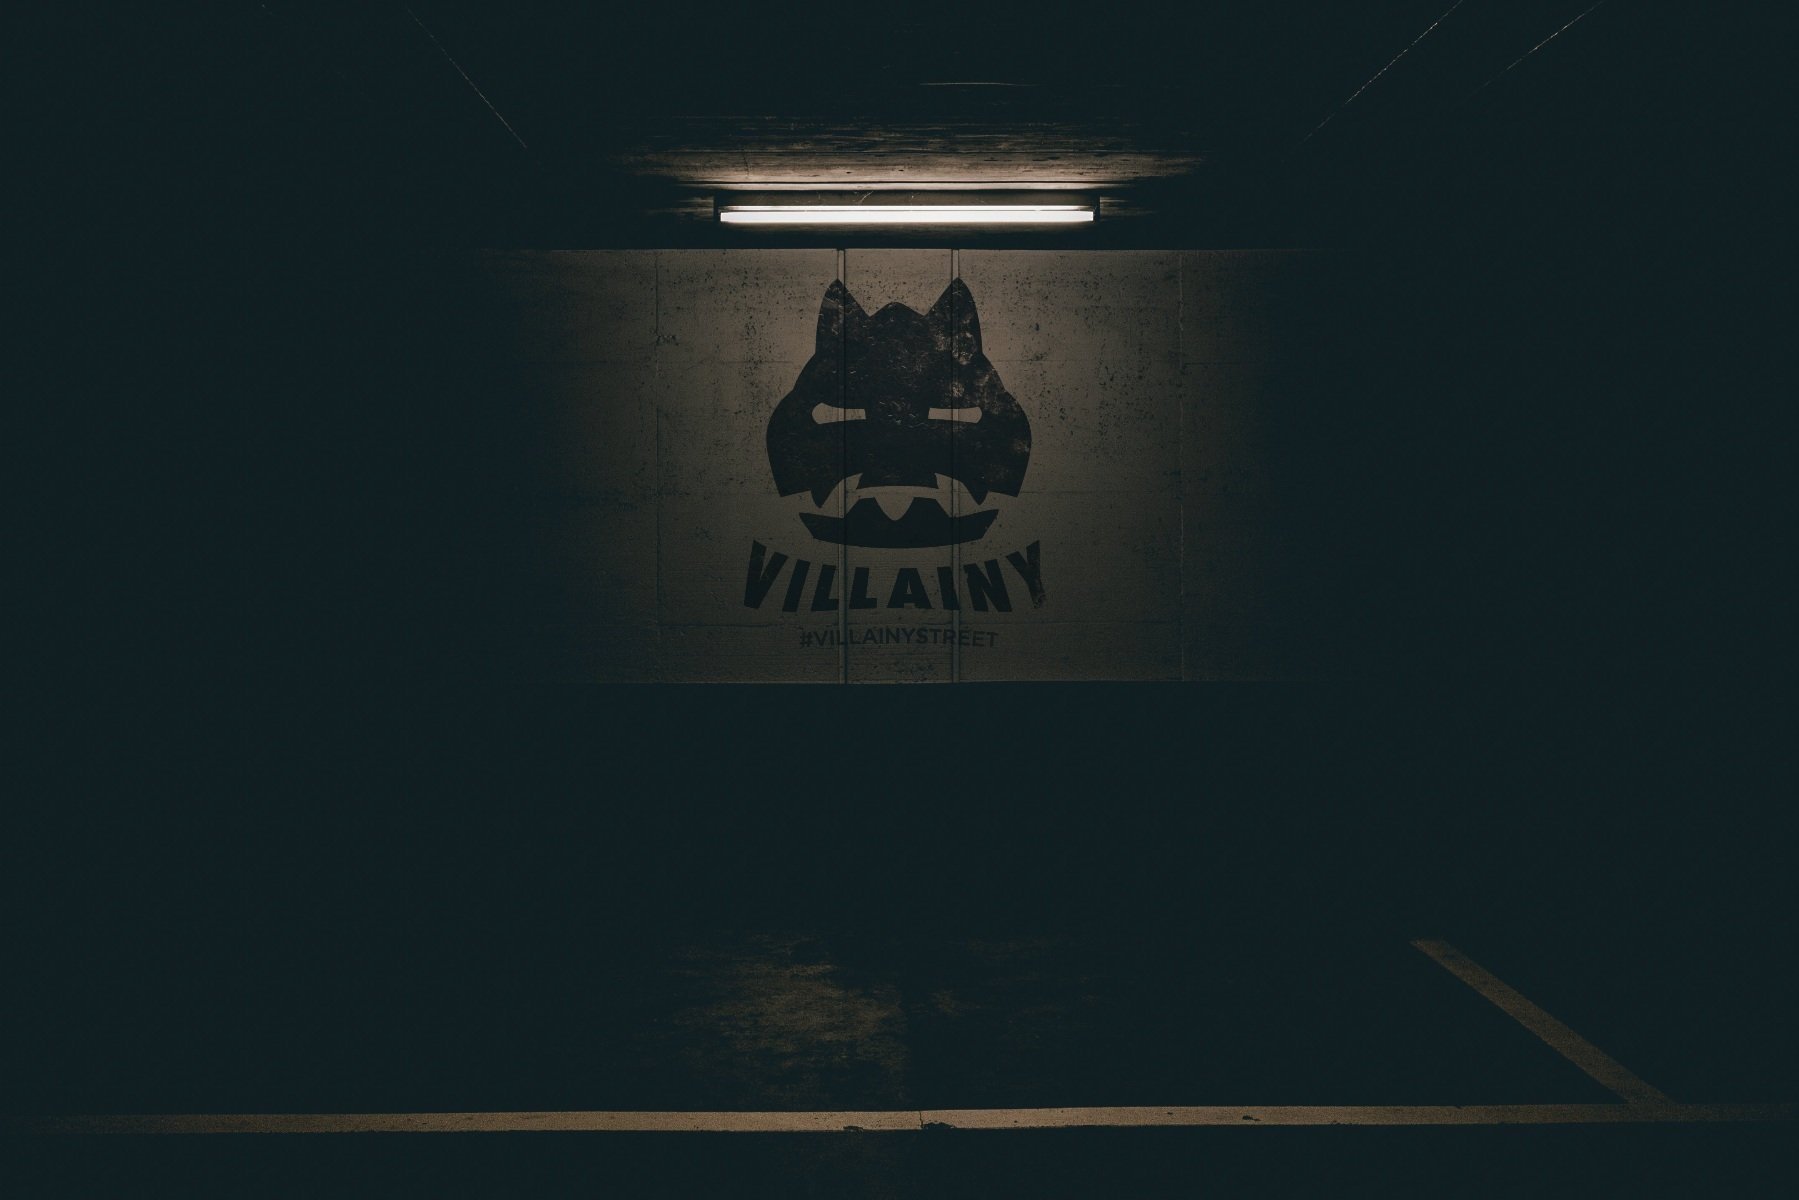 FILMS â€” Villainy Street Ltd.